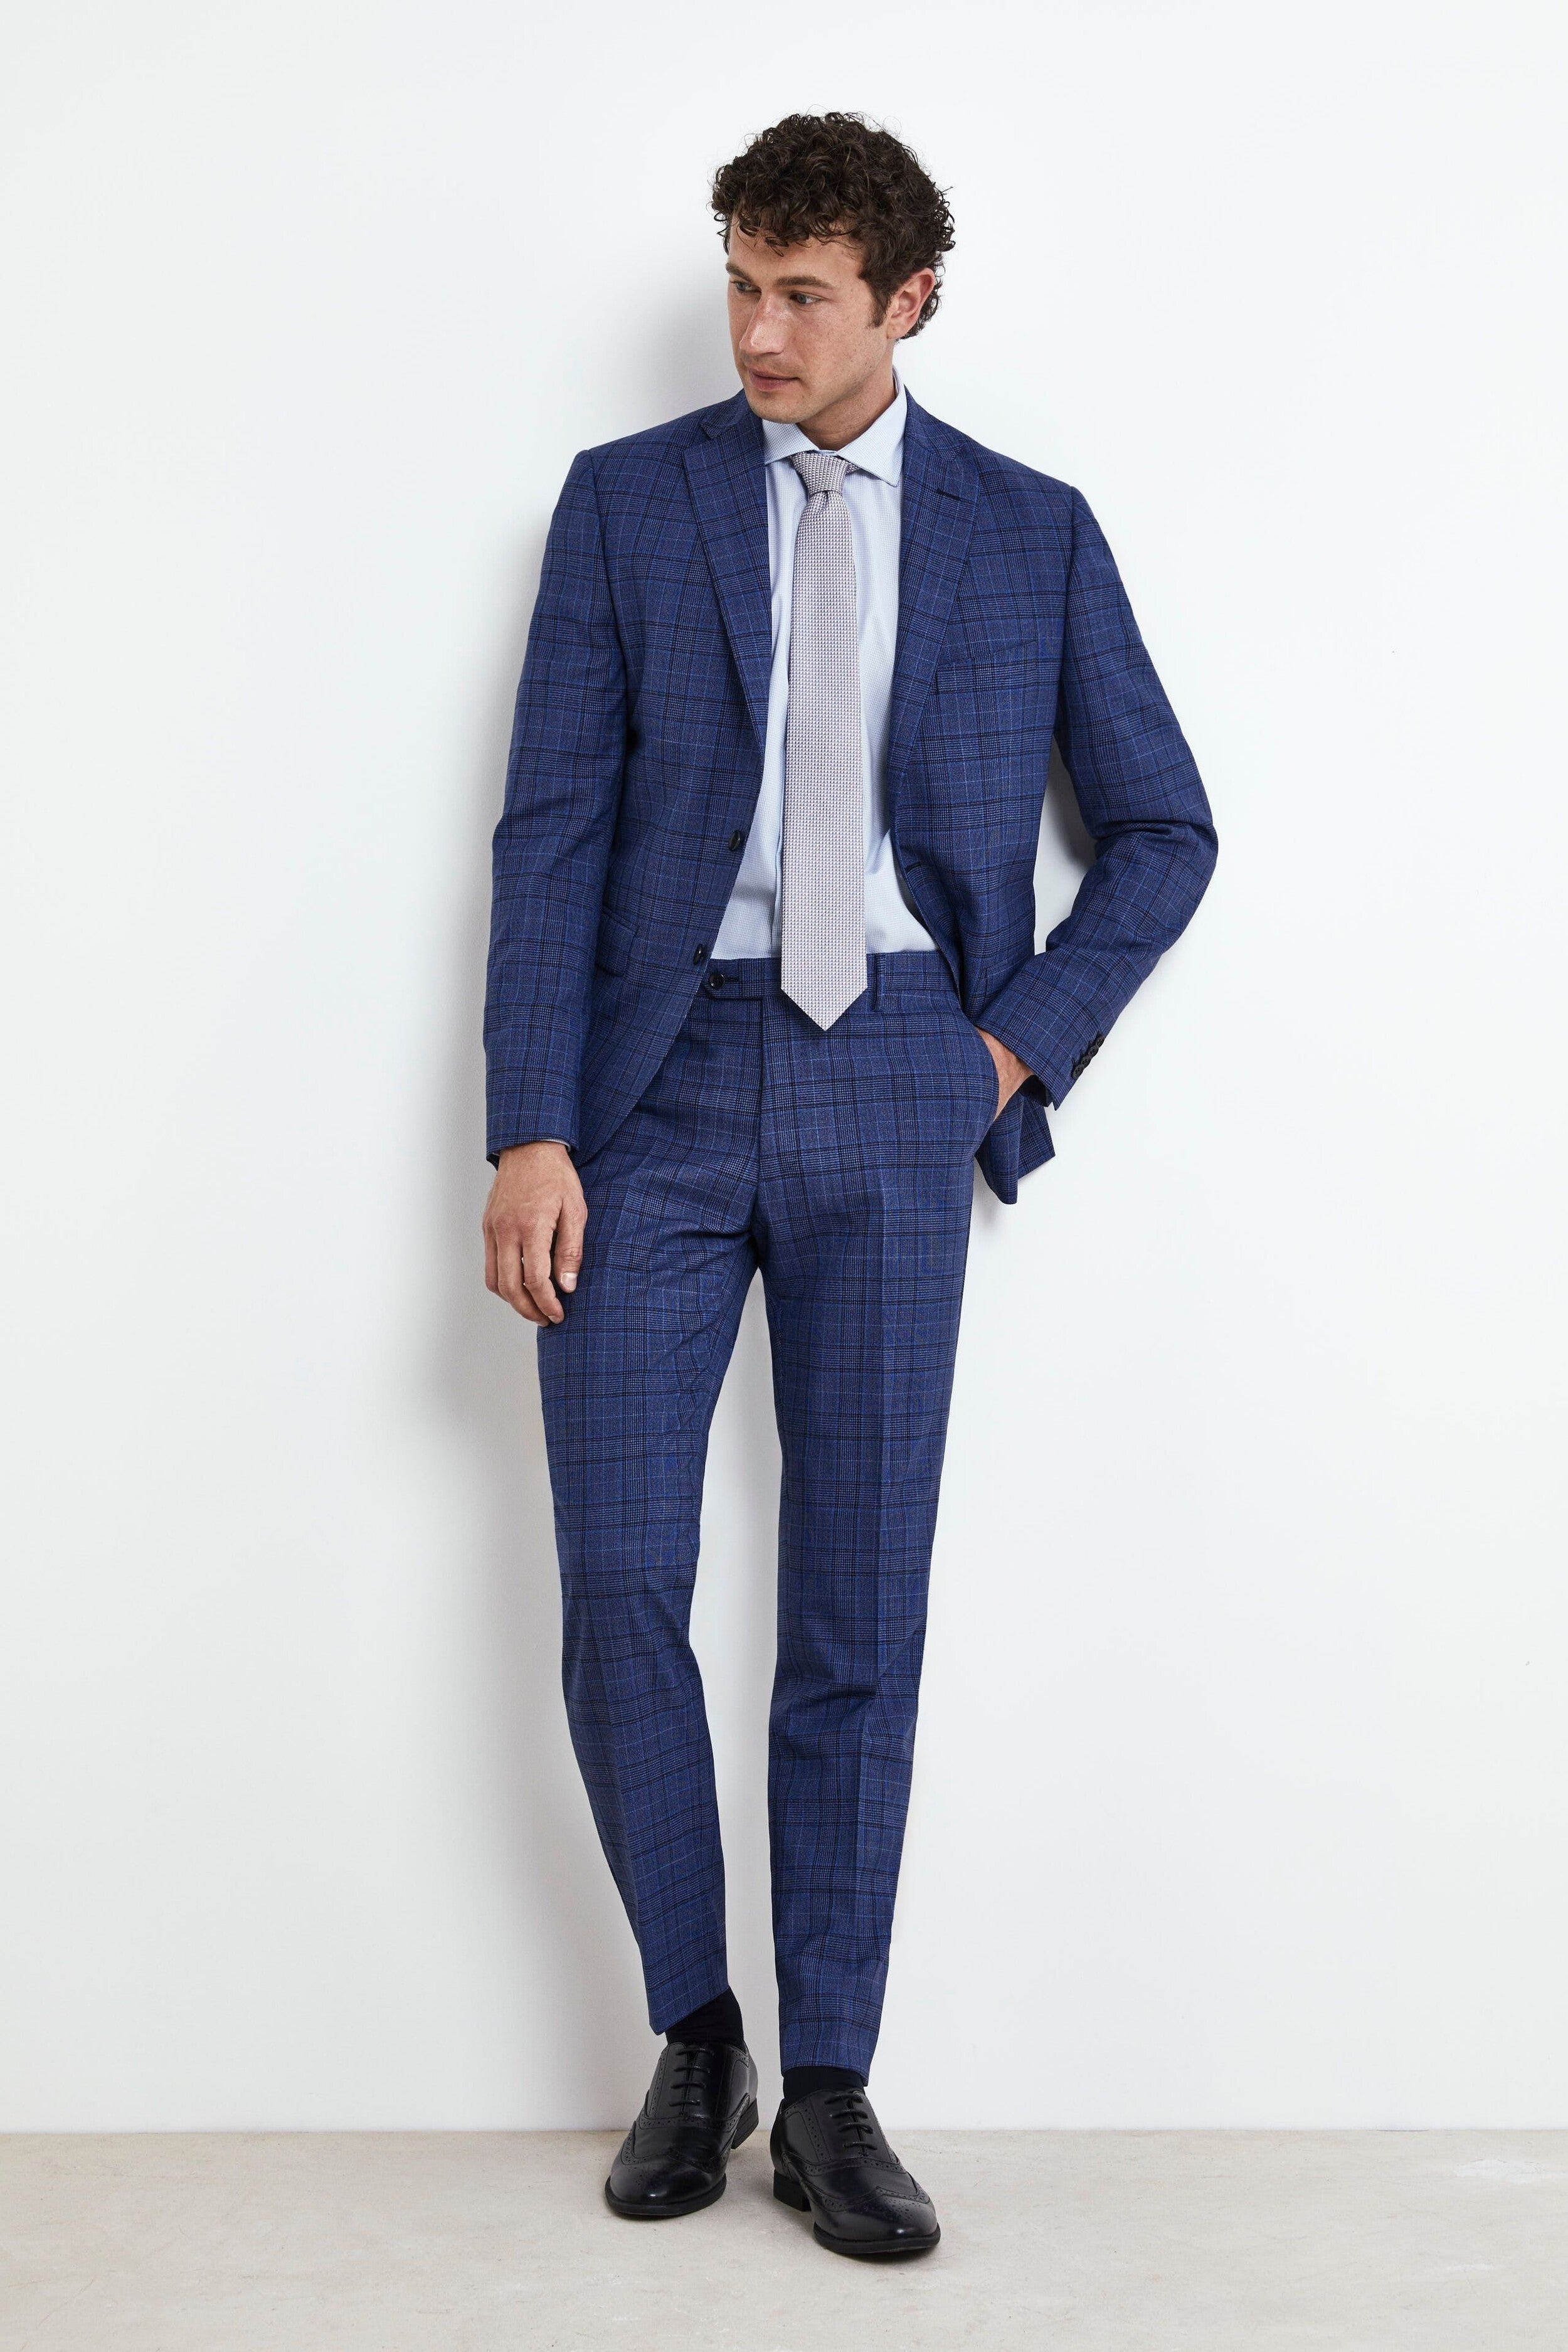 Elegant Bluette Suit - Bluette check